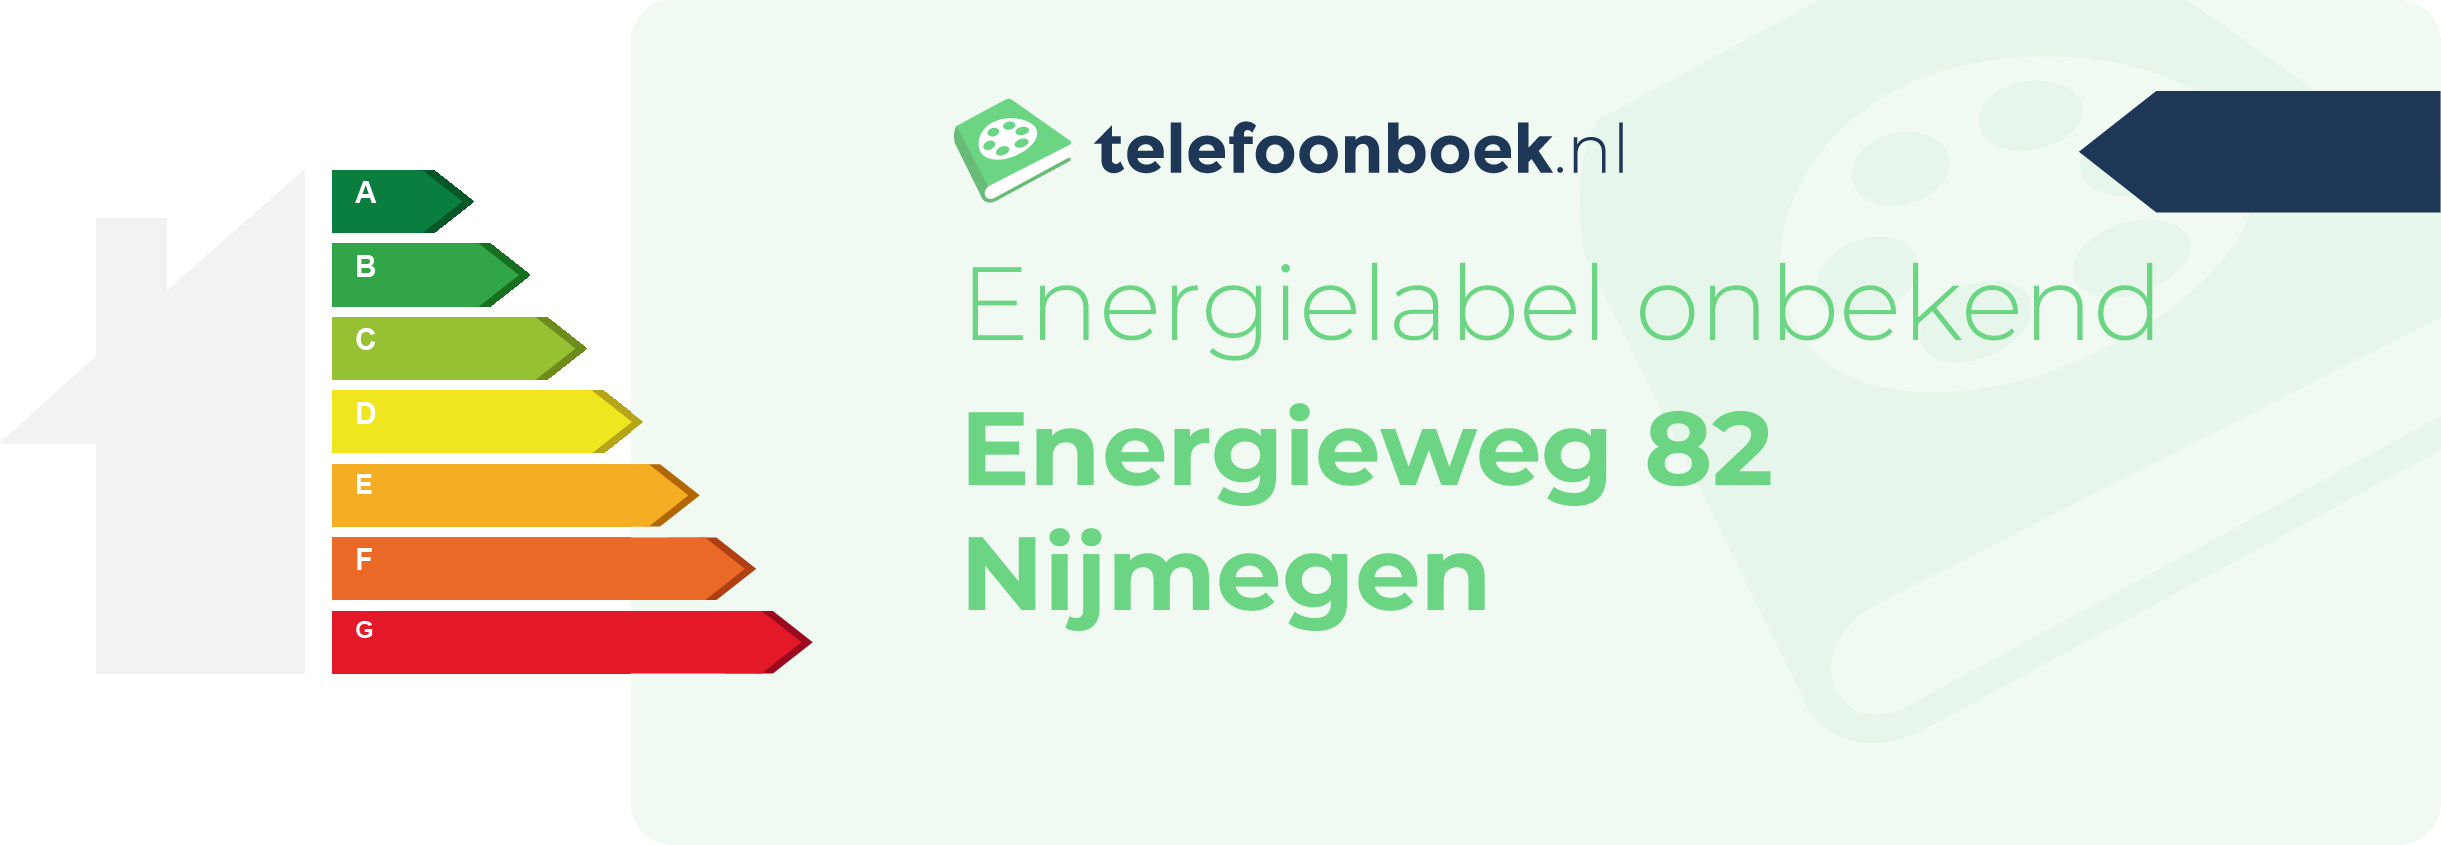 Energielabel Energieweg 82 Nijmegen